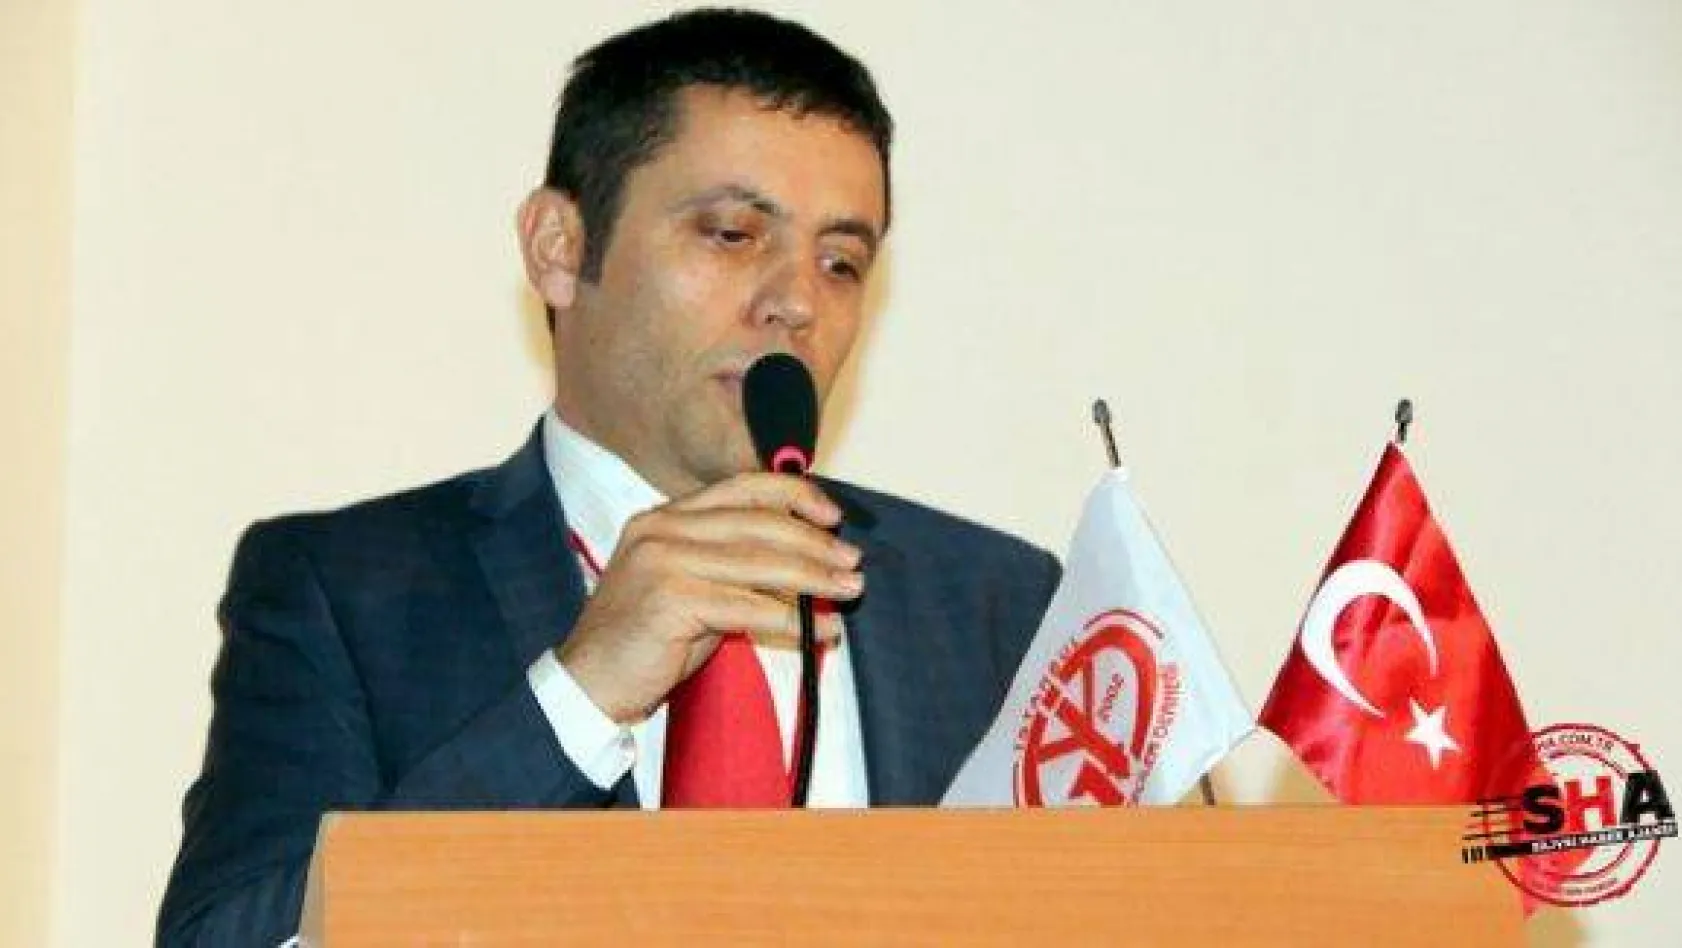 İYGAD'ın yeni başkanı Mehmet Mert seçildi